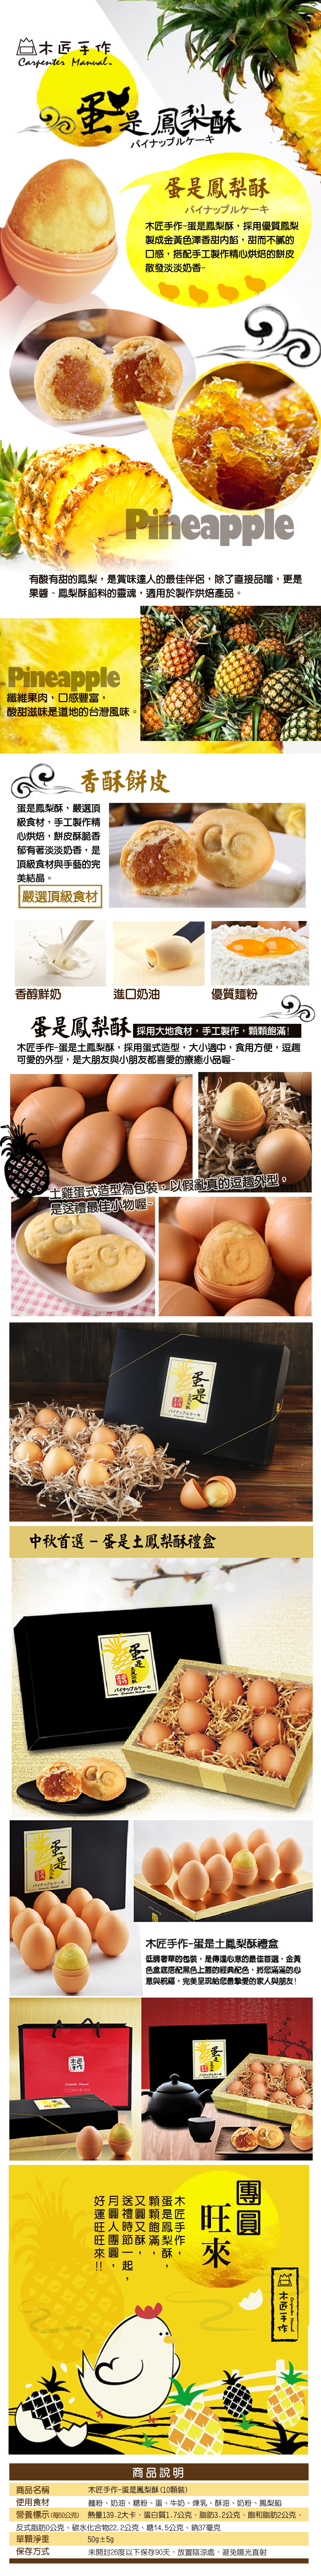 【木匠手作】蛋是土鳳梨酥禮盒(10顆/盒) 創意伴手禮 雞蛋造型鳳梨酥